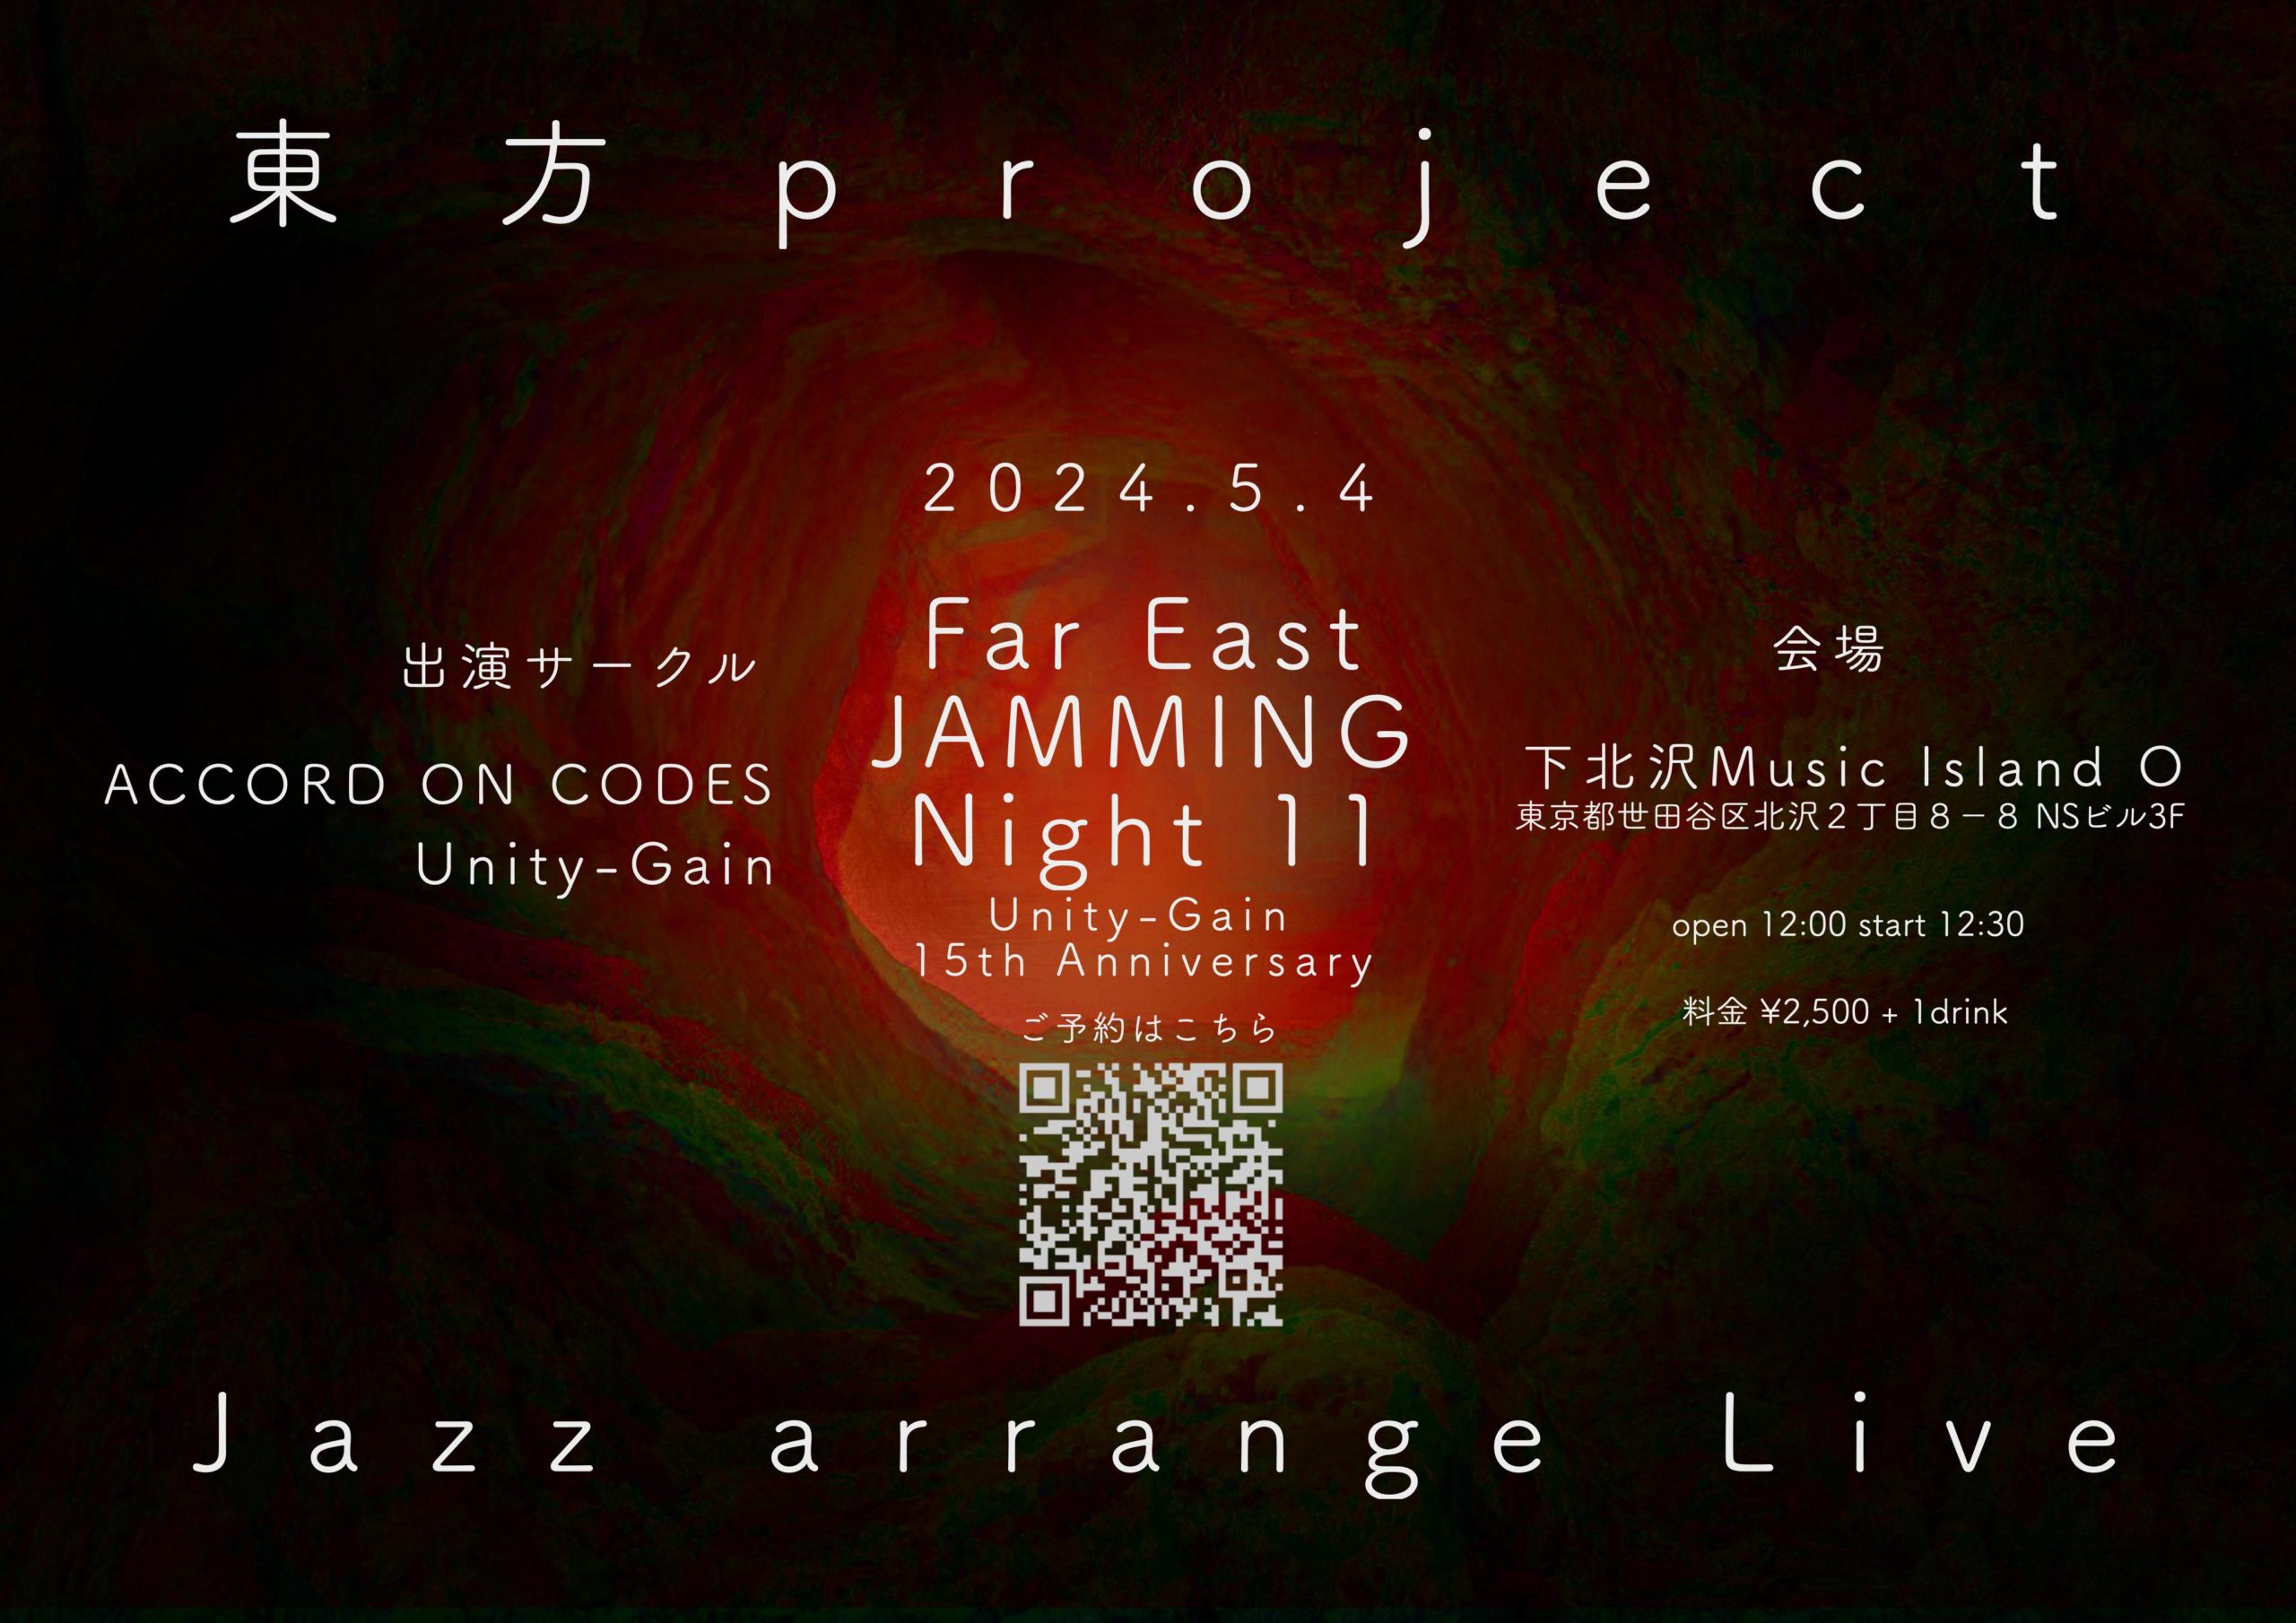 Far East JAMMING Night 11.0 【昼】